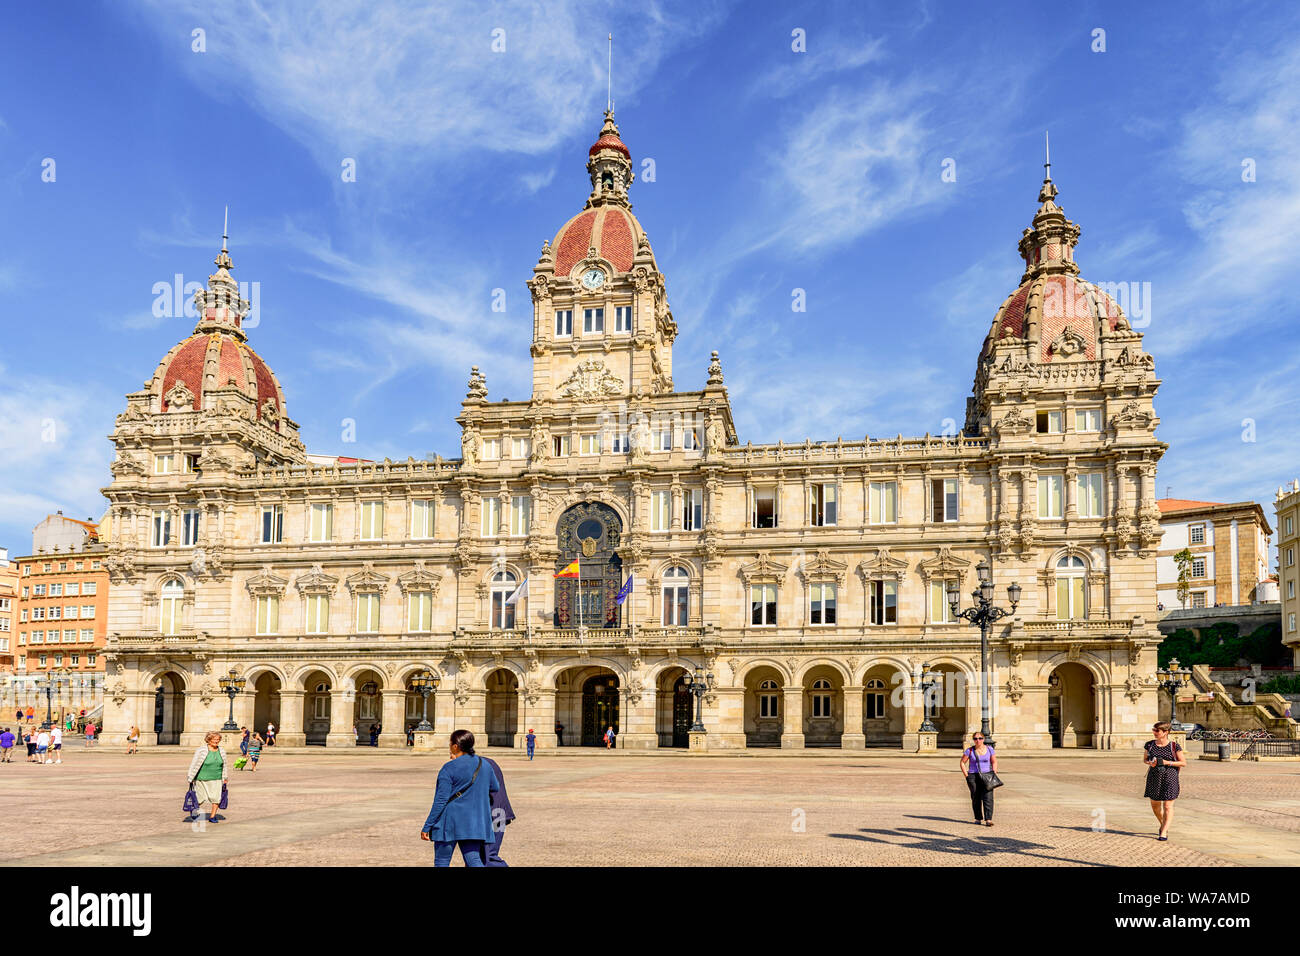 A La Coruna, Spanien. Das prunkvolle Gebäude Rathaus Palacio Municipal in Maria Pita Platz. A La coruna. Spanien Stockfoto